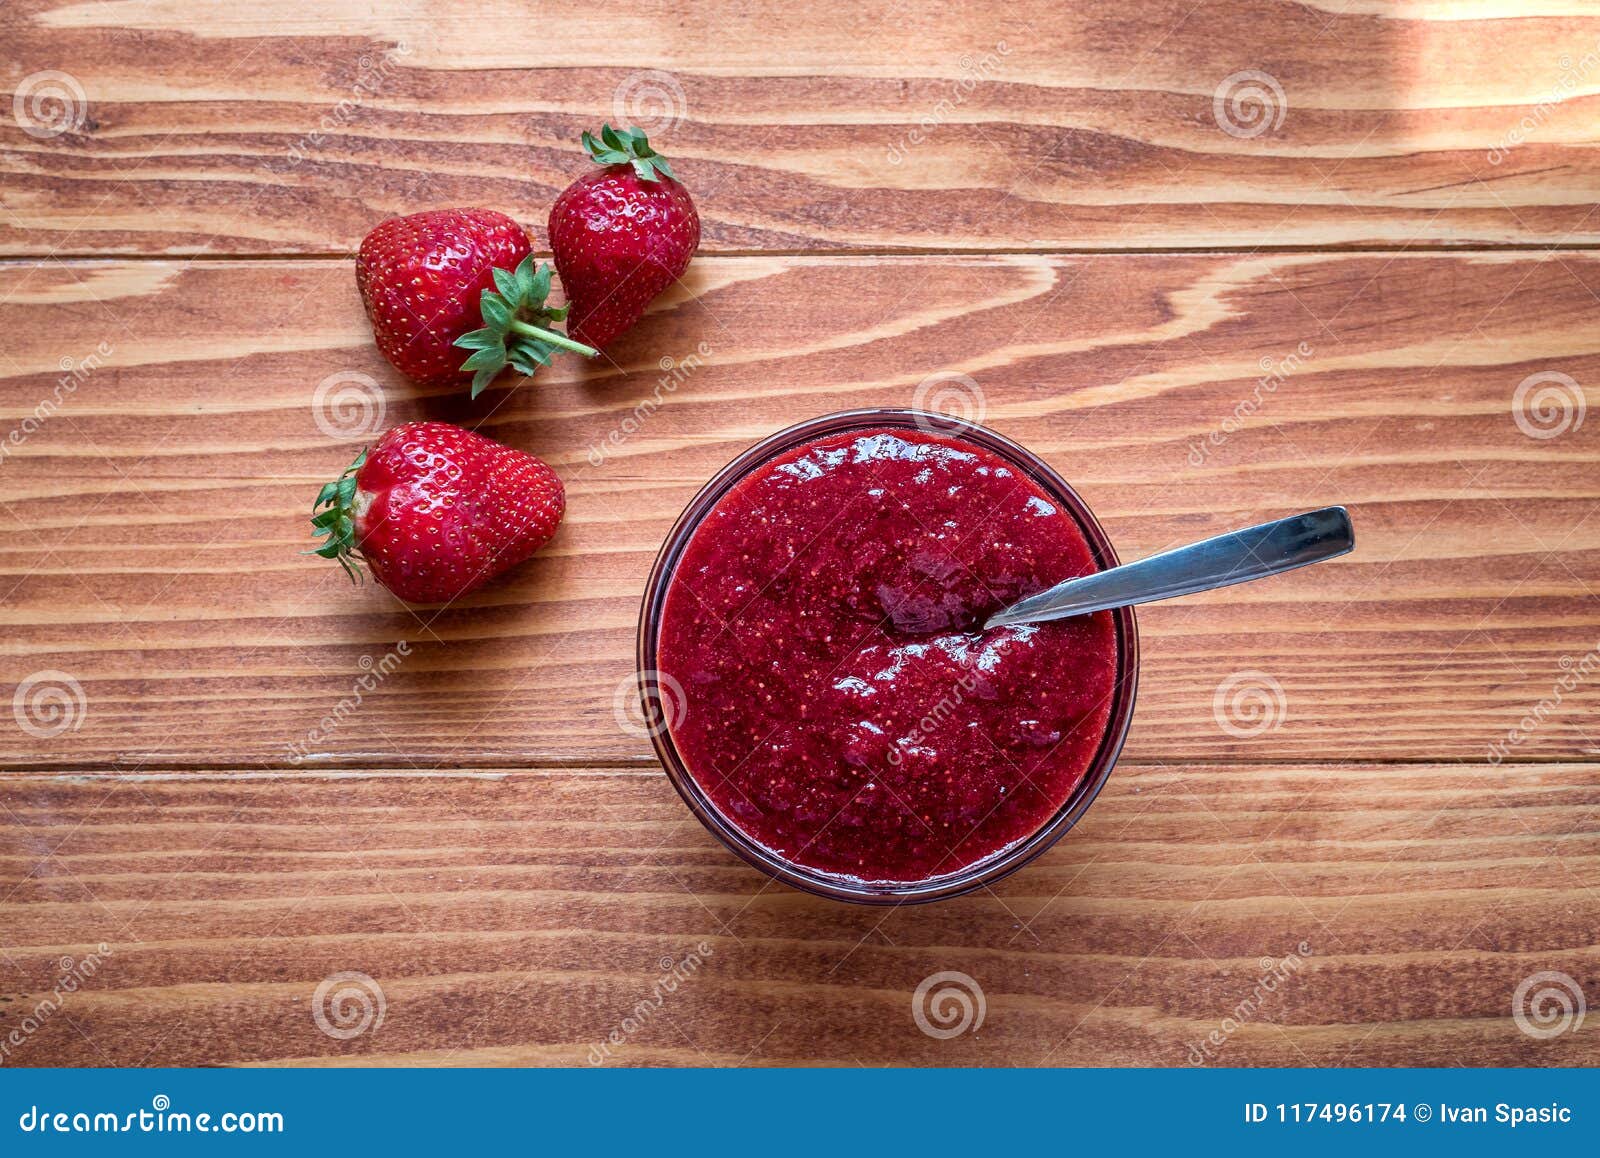 homemade strawberry jam with fresh ripe strawberries